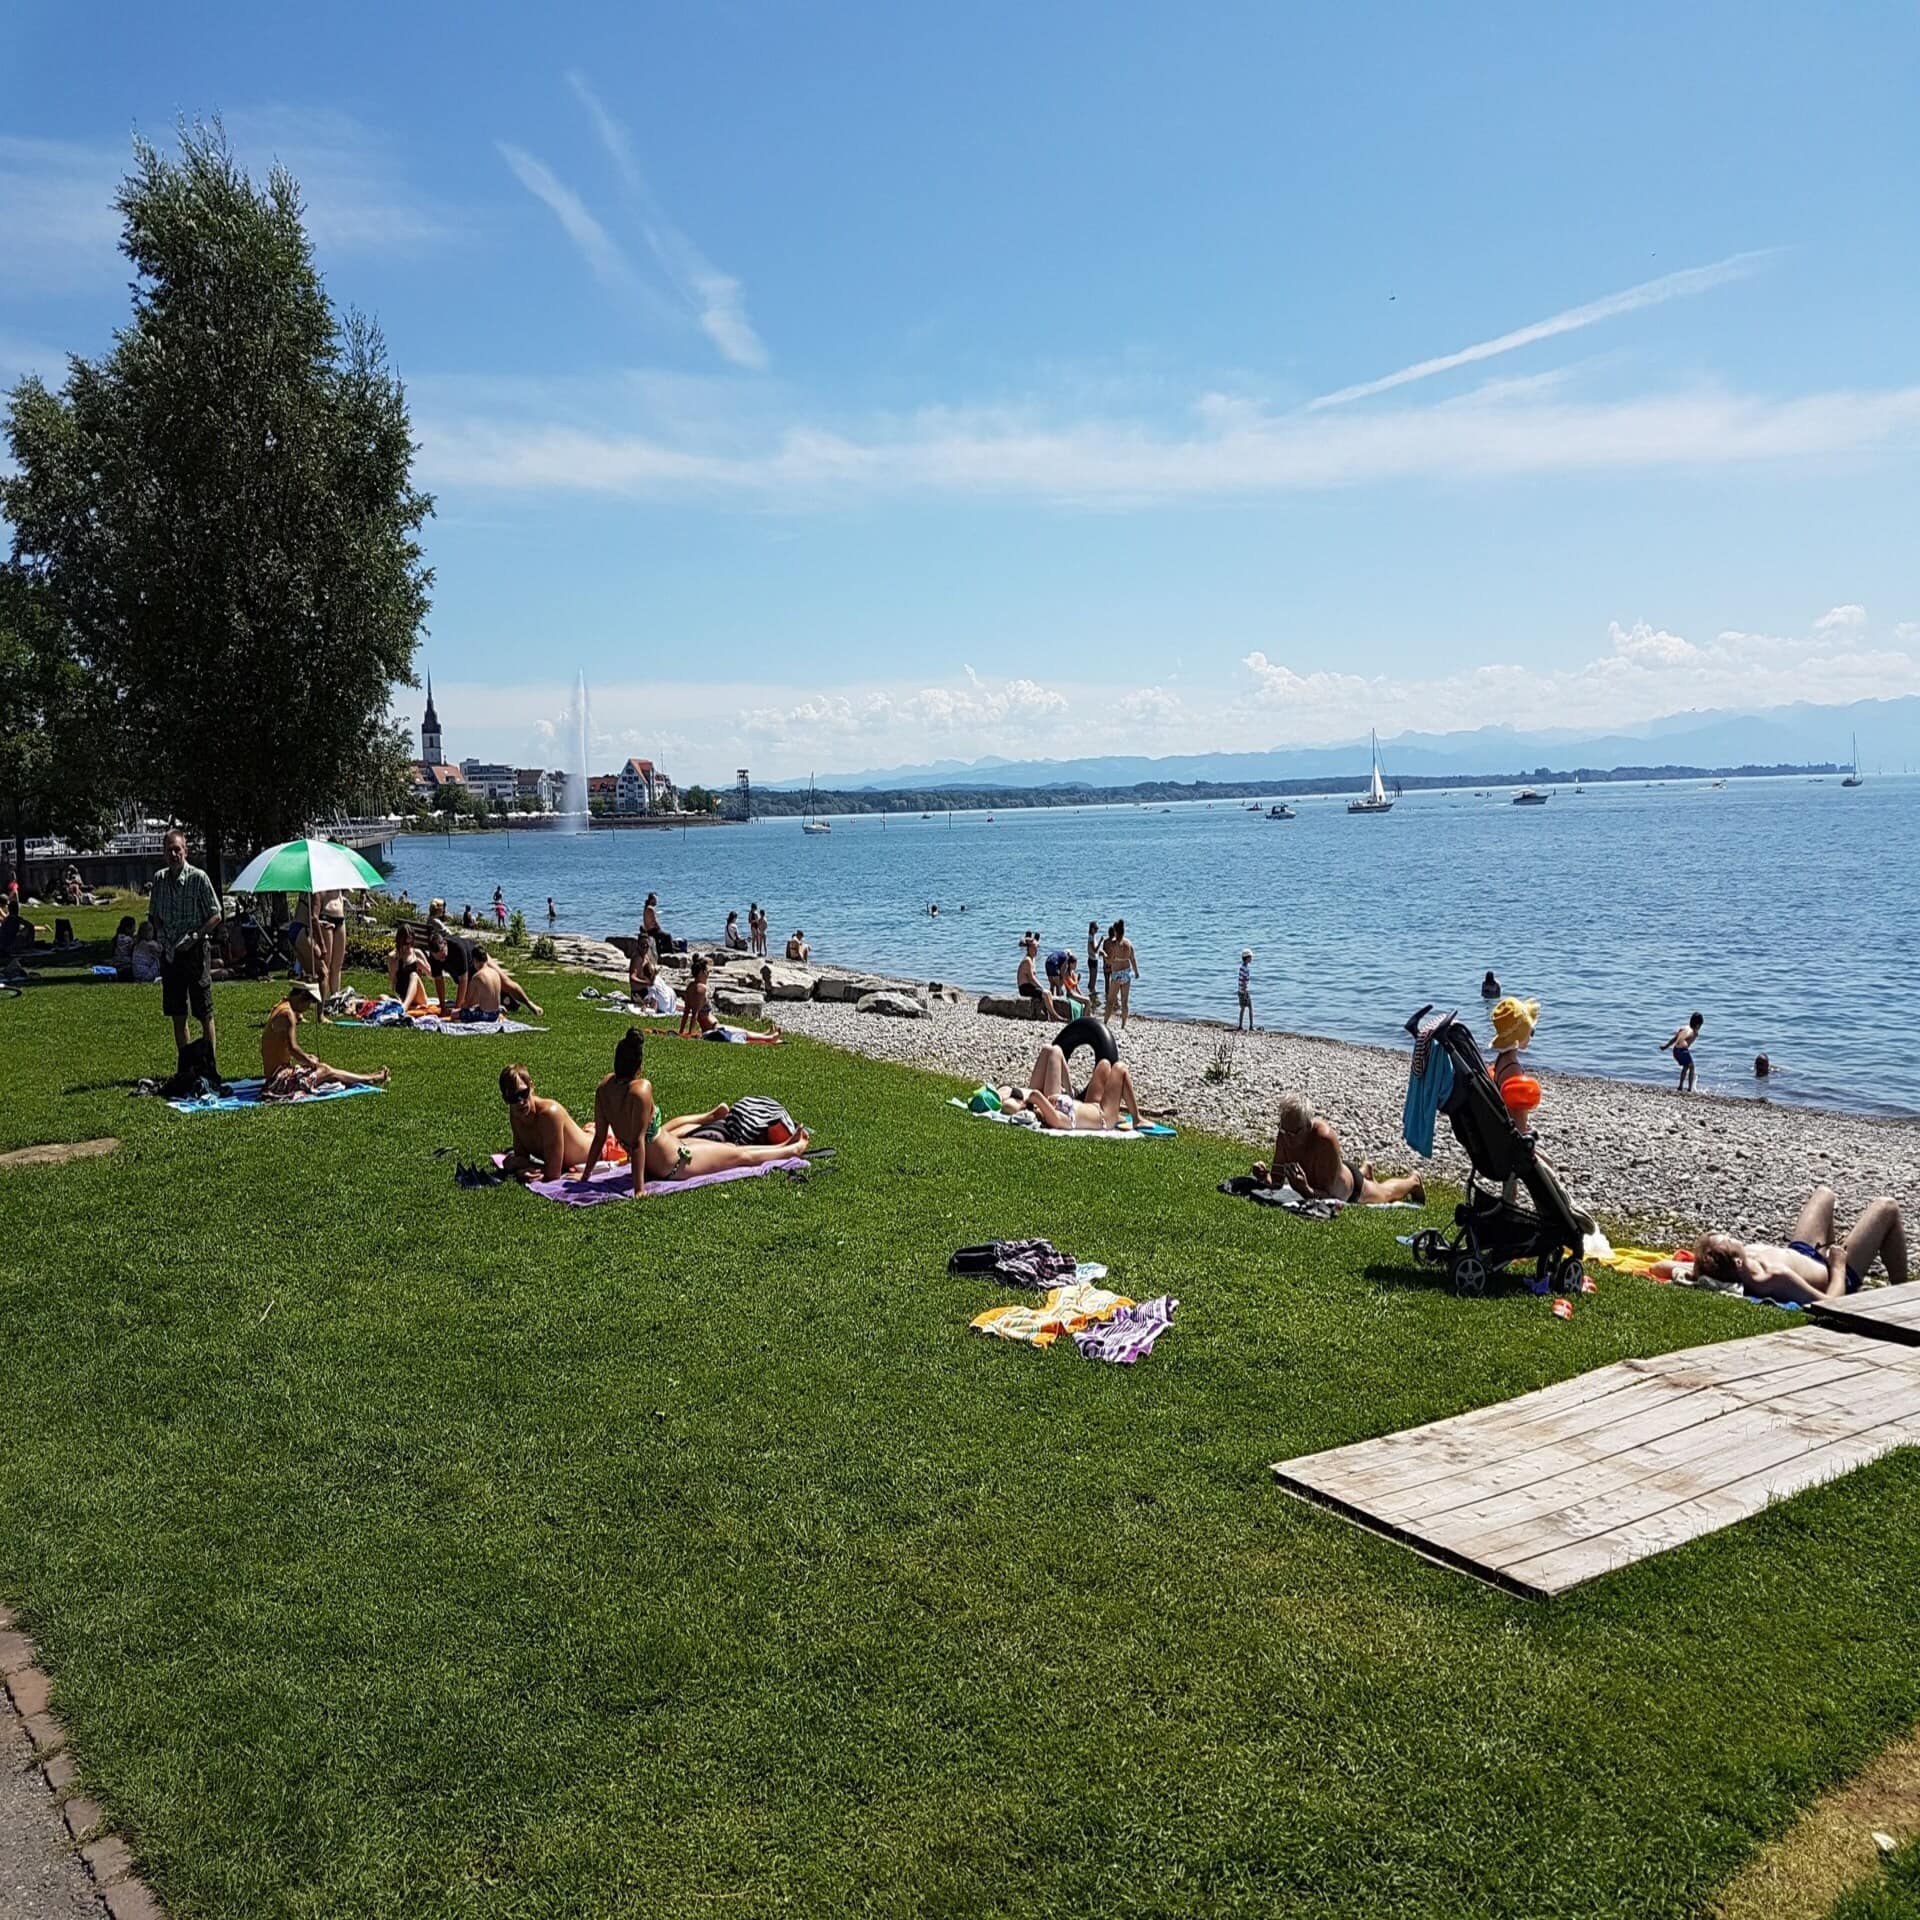 Leute sonnen sich auf einer Liegewiese mit Strand am Bodensee, links ist ein Ort zu sehen.